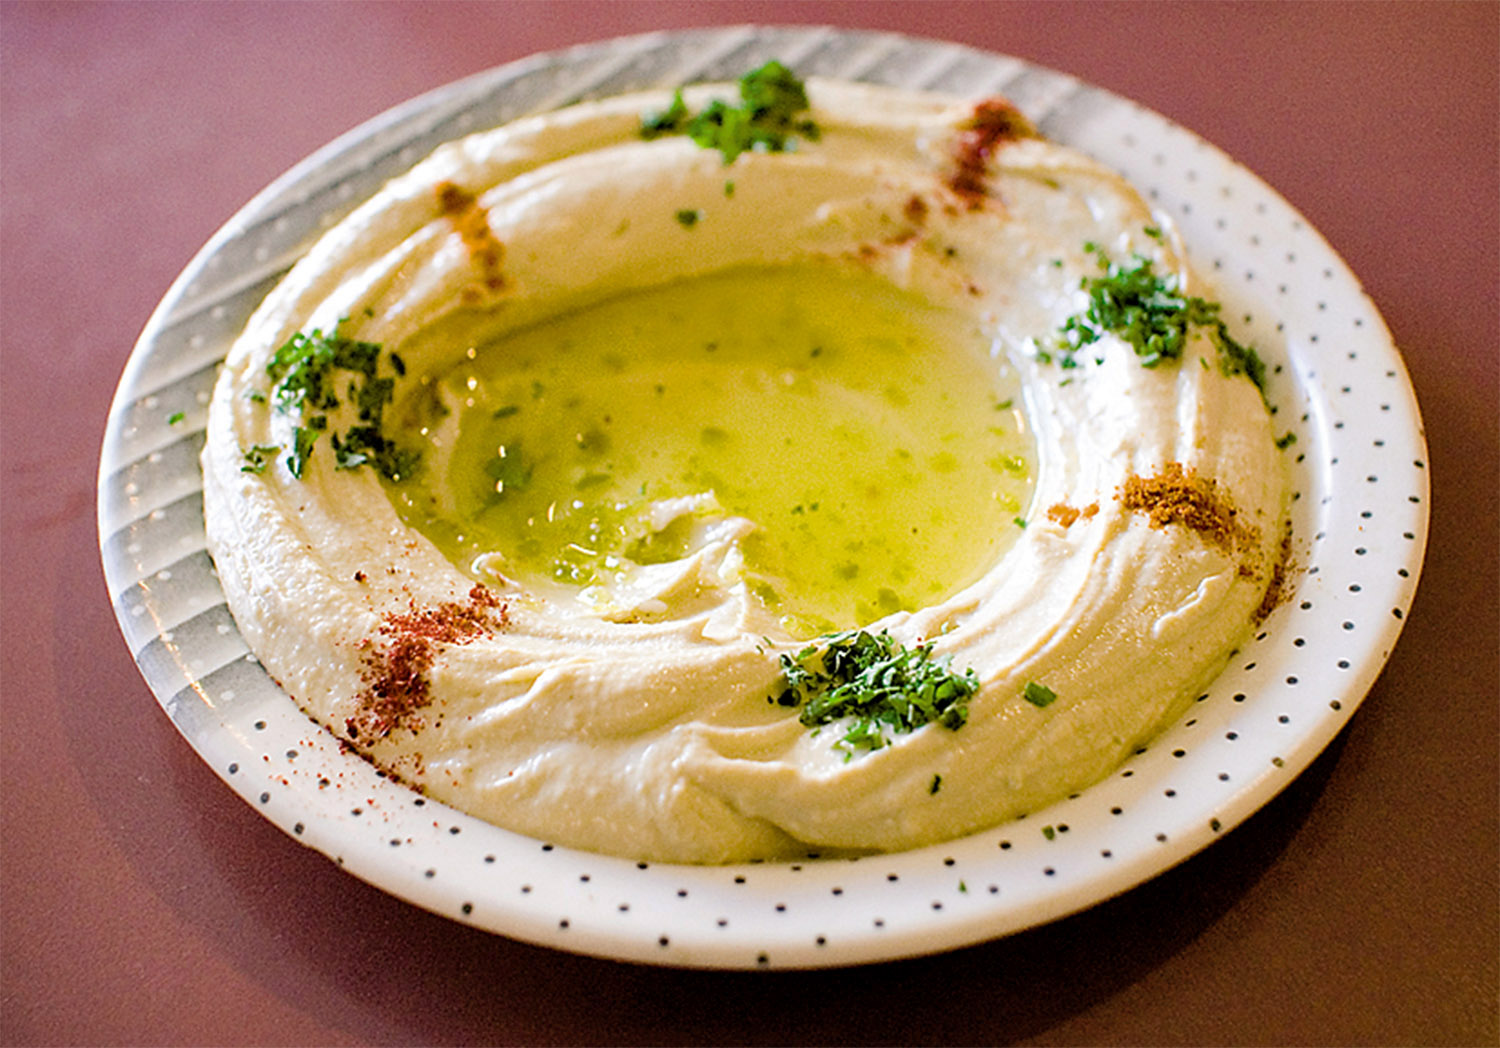 Liebesgrüße aus dem Libanon: In Neukölln schmeckt uns Hummus bei Azzam richtig gut. Foto: Paul Goyette